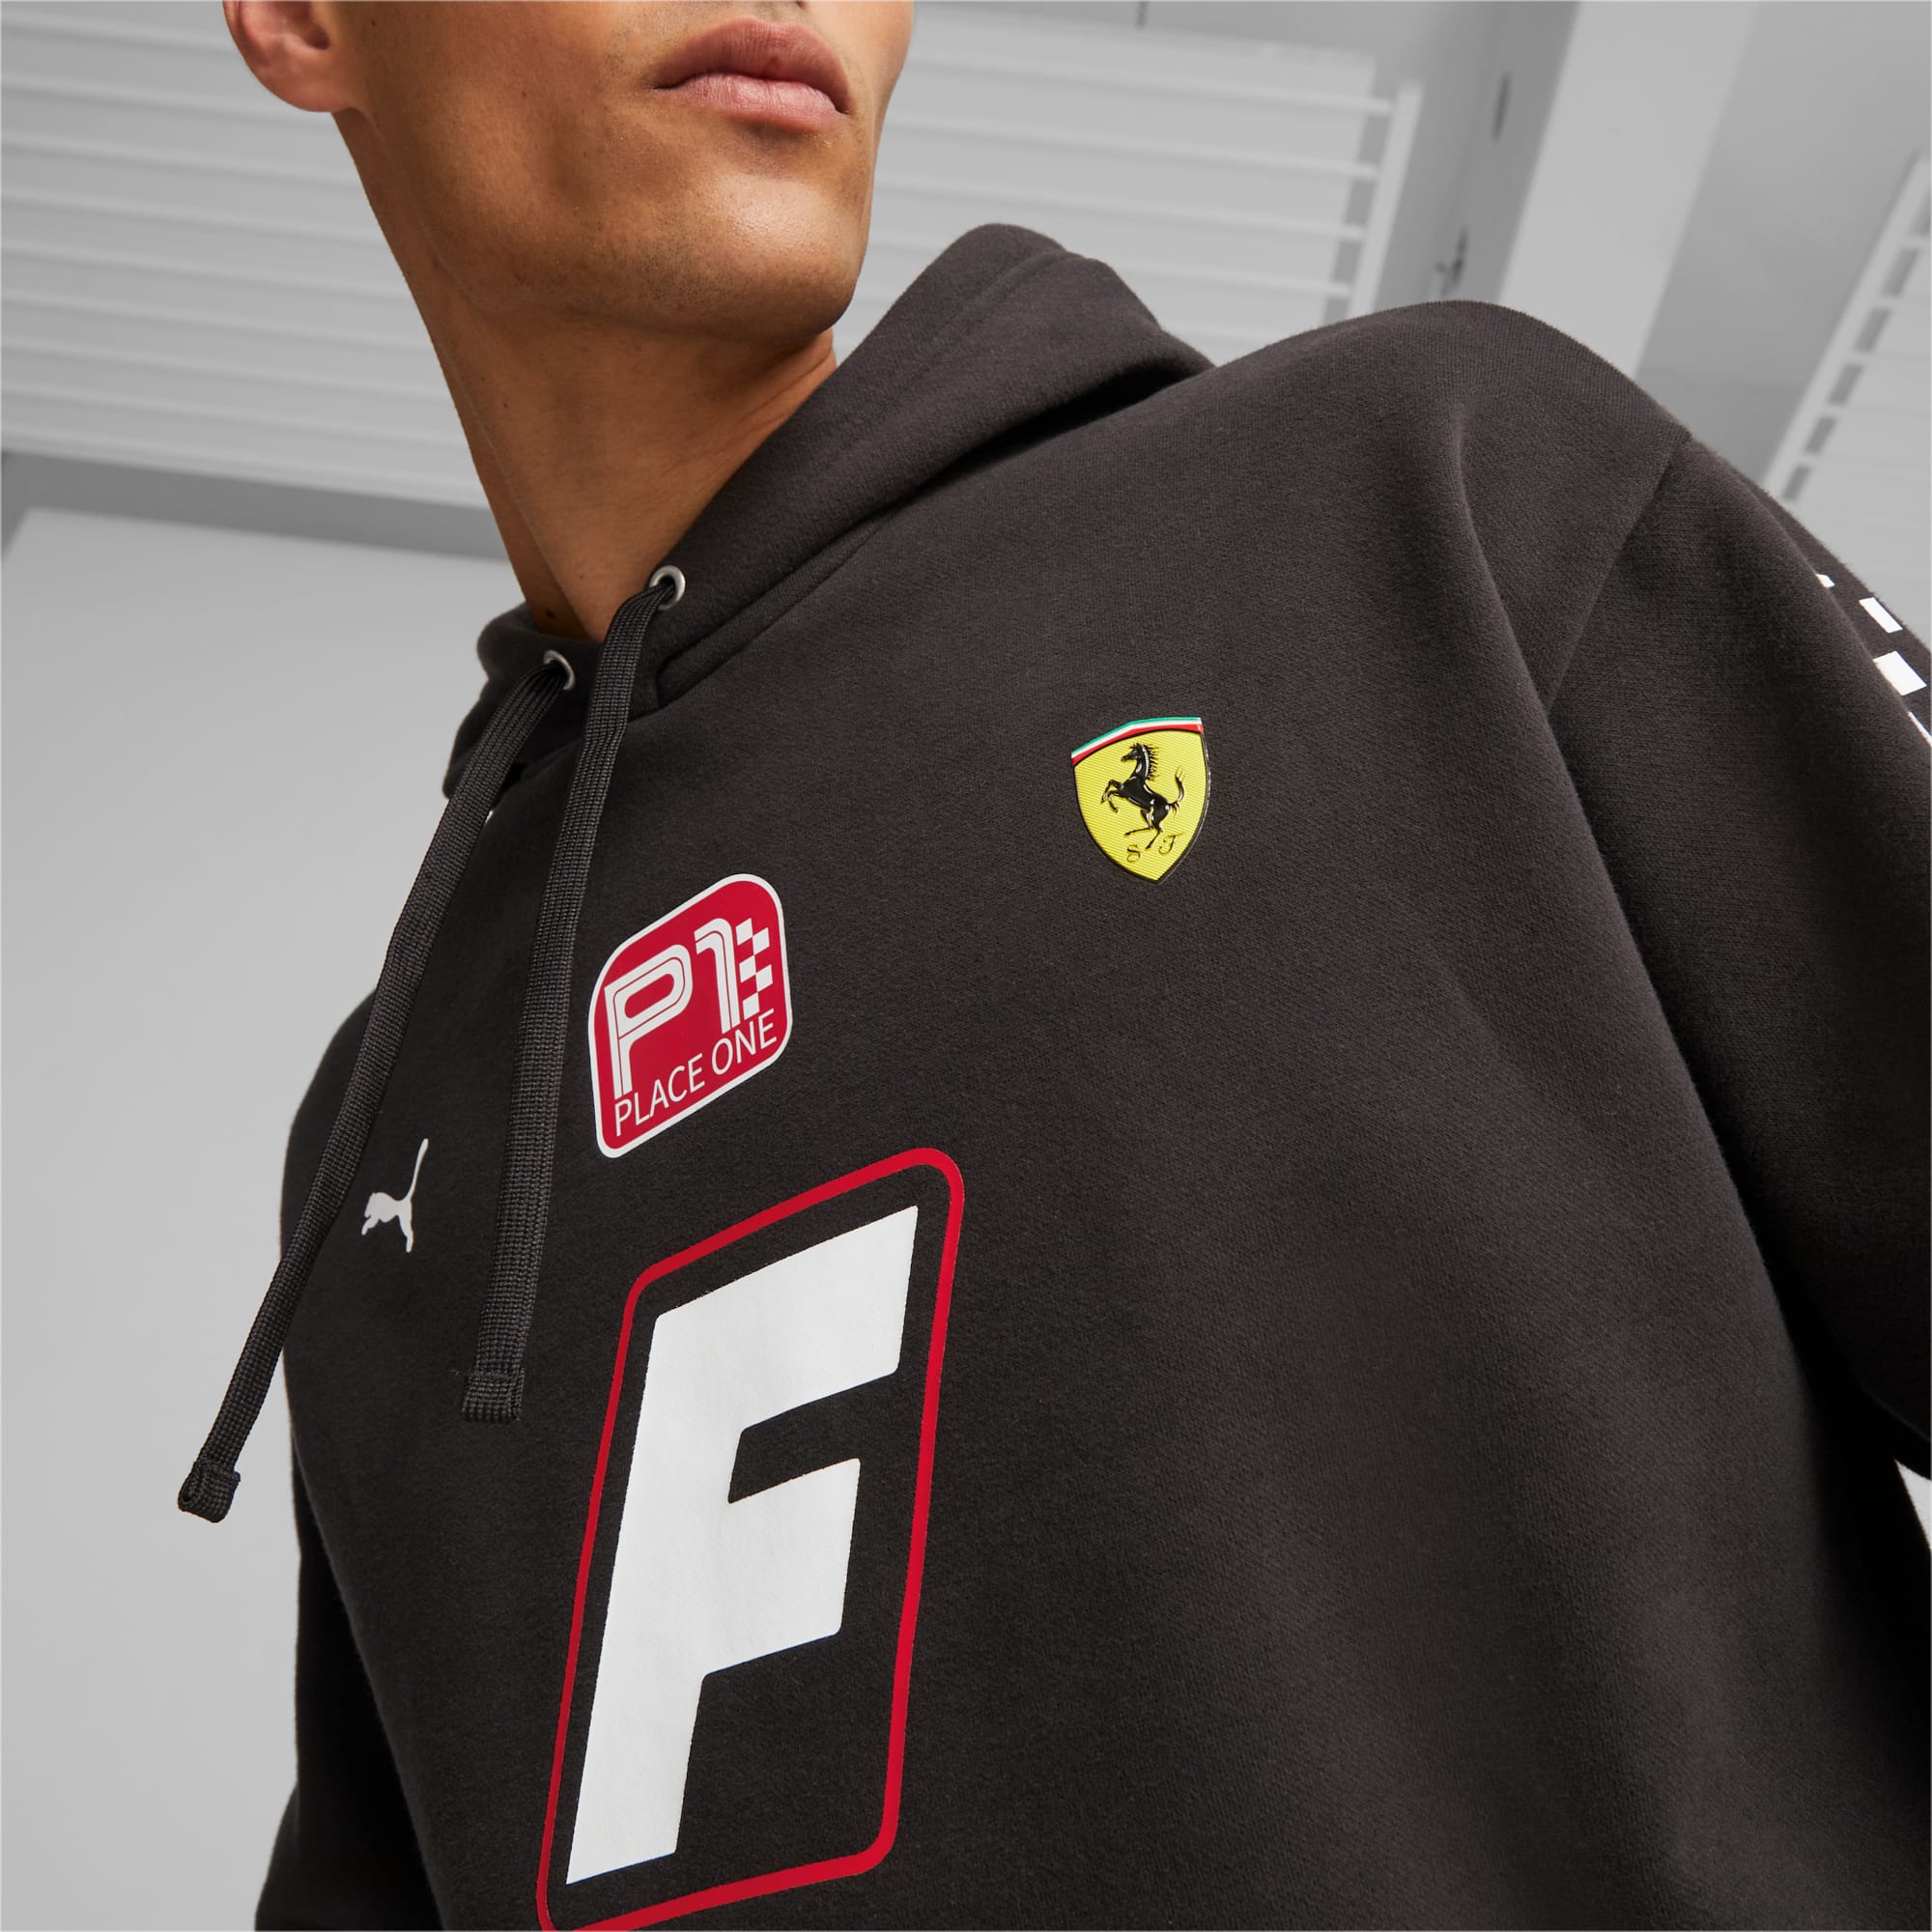 Ferrari F1 Hoodies, Ferrari F1 Sweatshirts